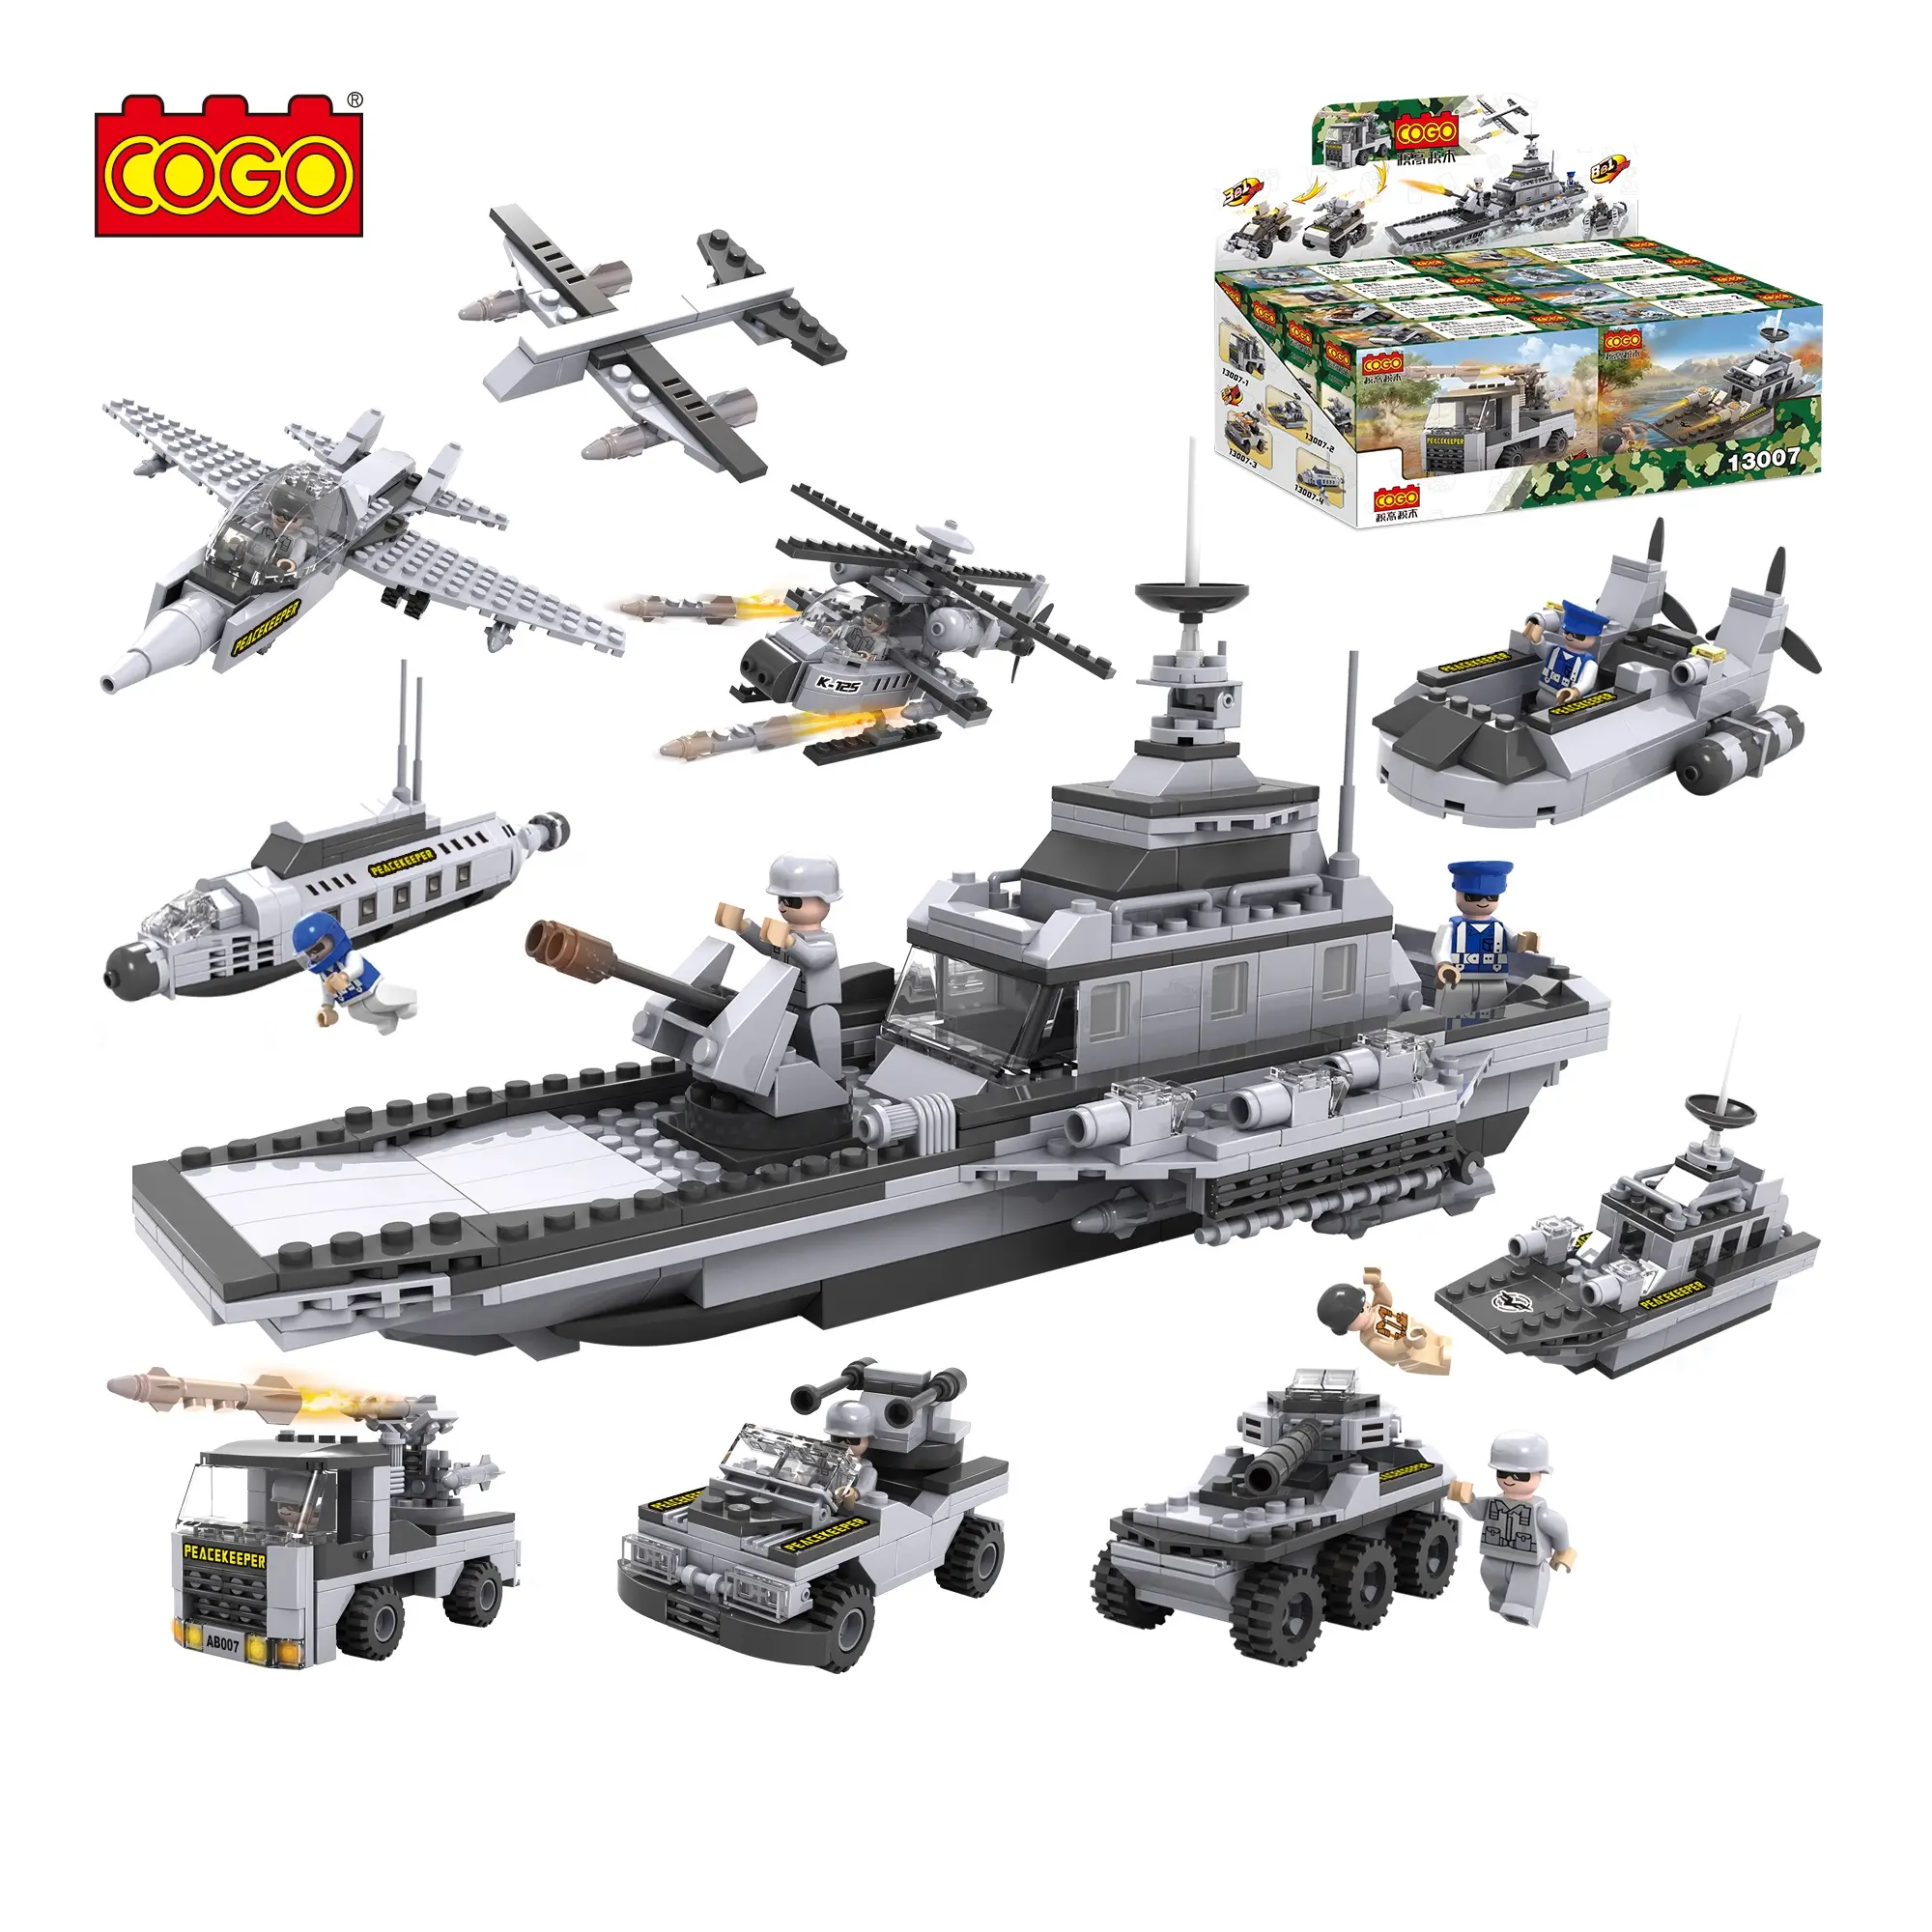 COGO 8 en 1 plus 3 en 1 blocs de construction éducatifs pour enfants, jouets multi-assemblage de navires de guerre, transformation de combat